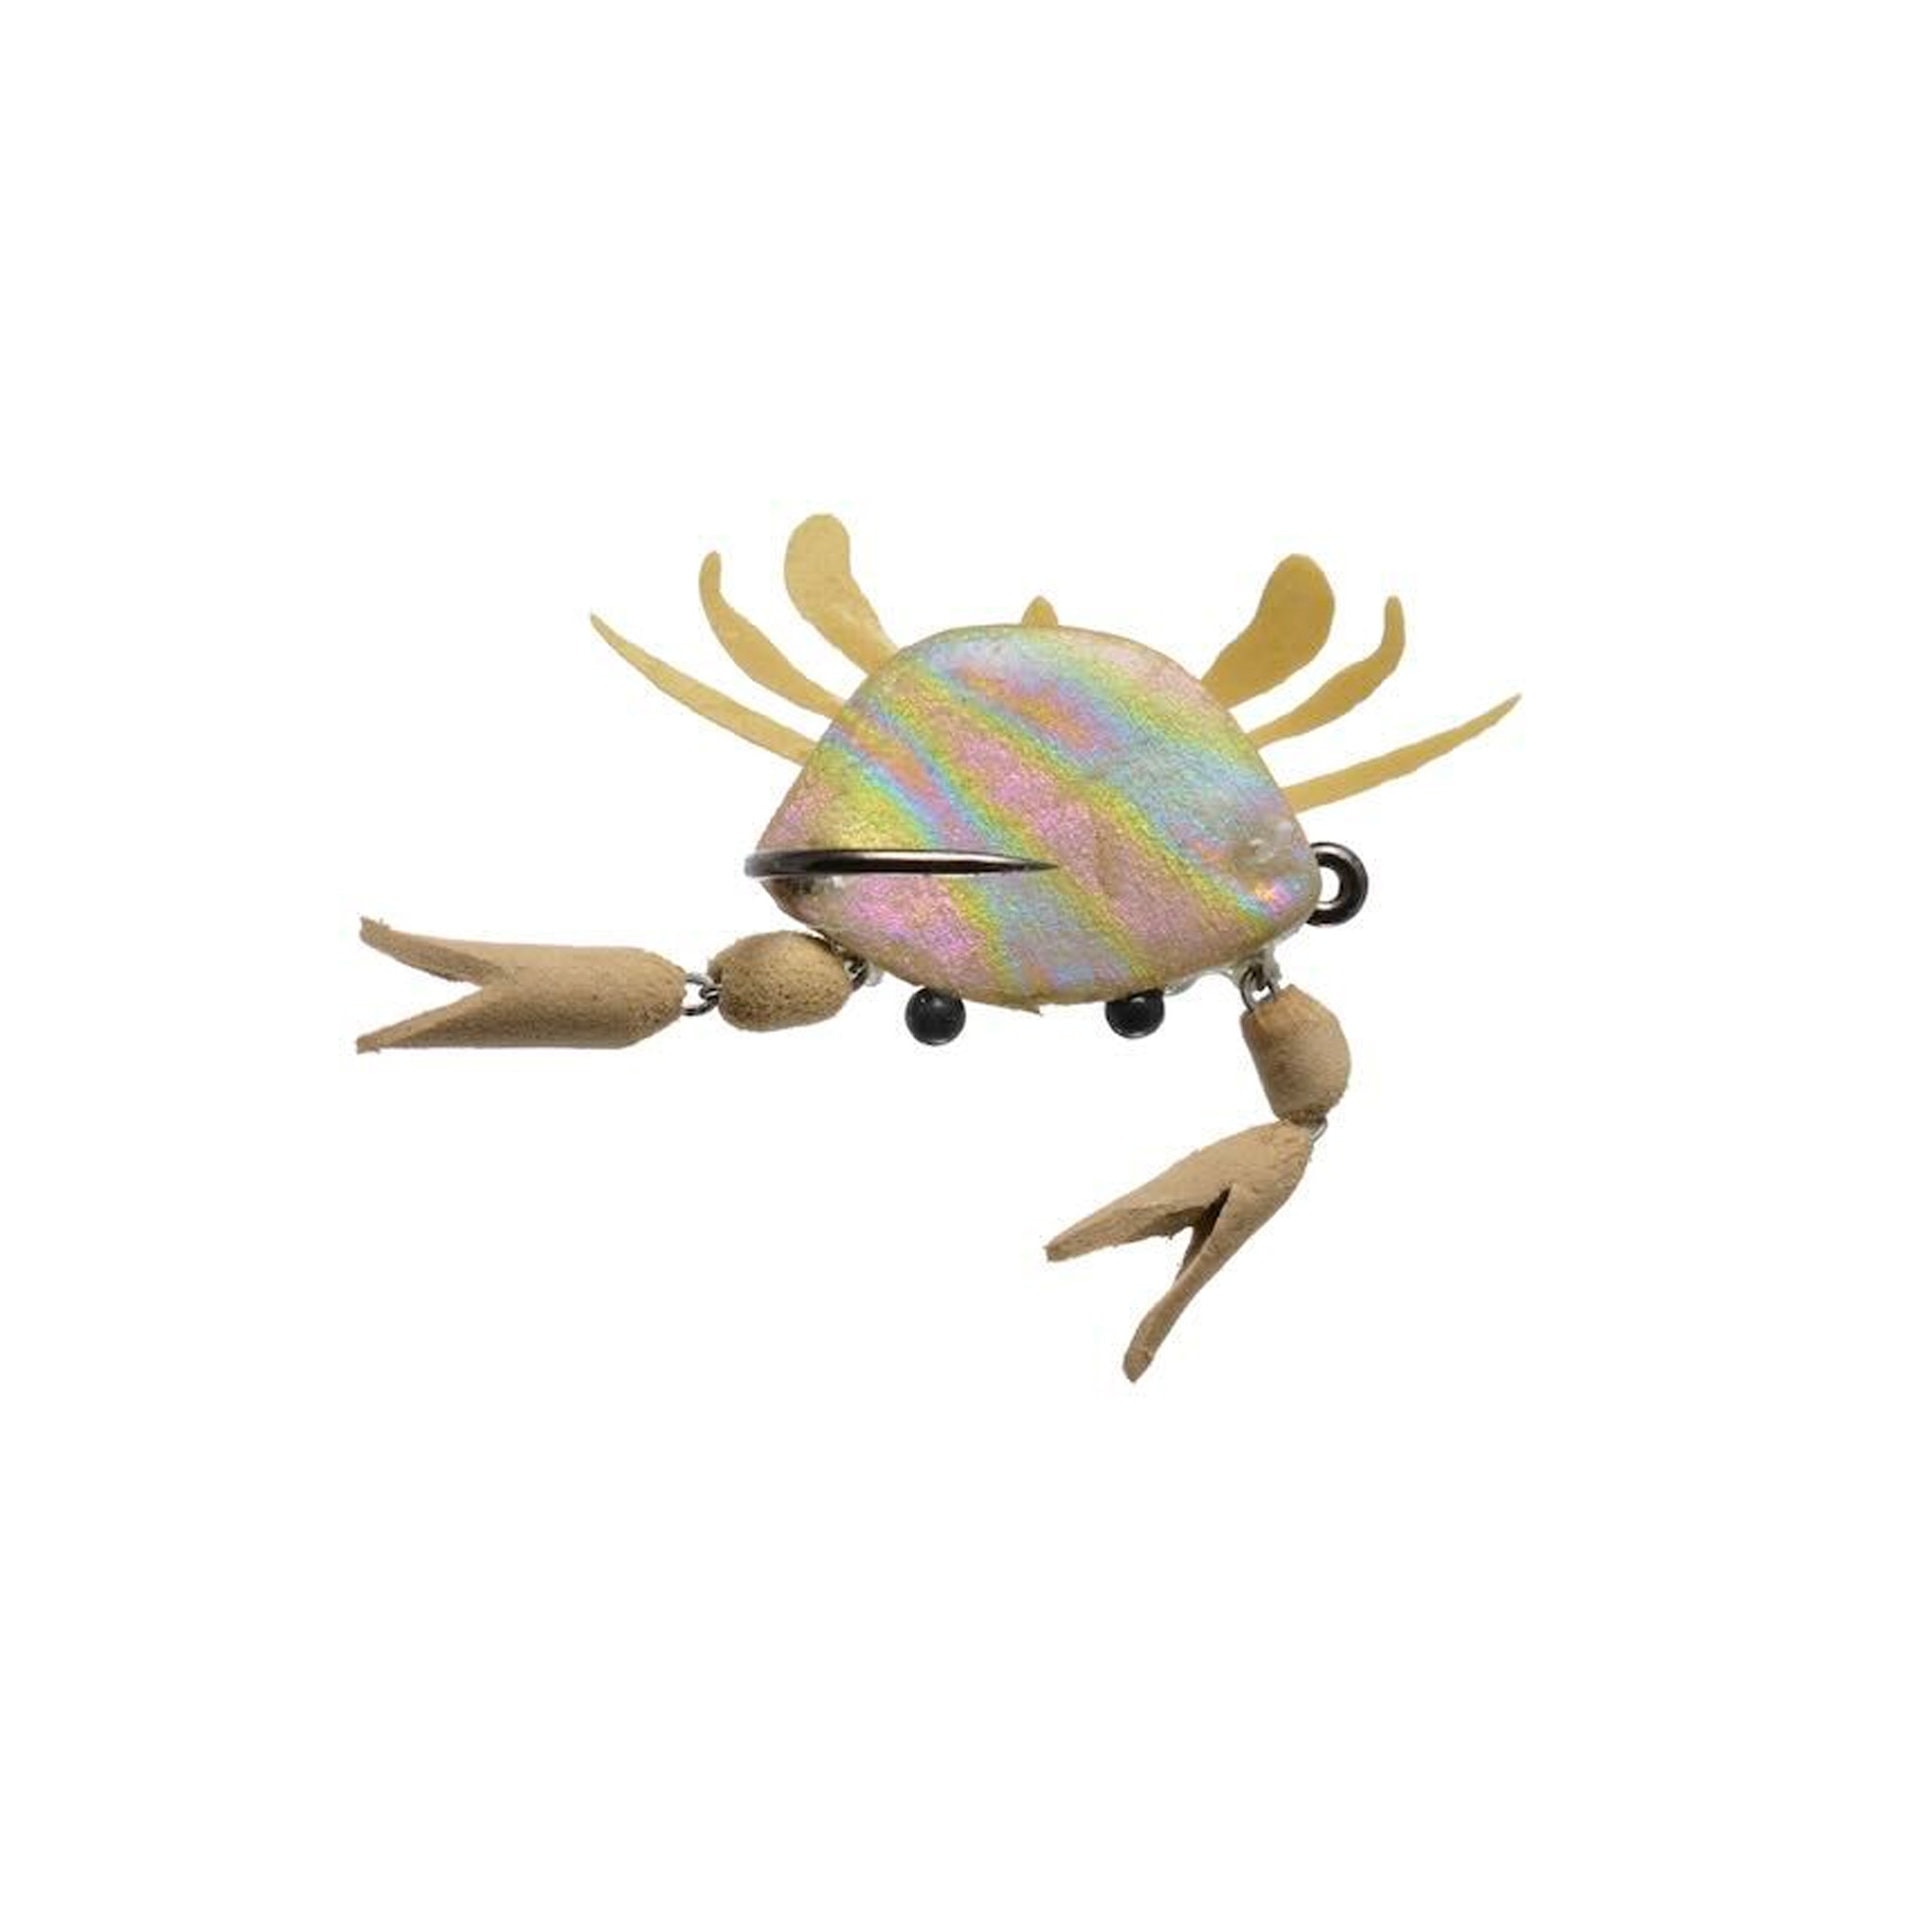 Arculeo's Claws-Up Crab